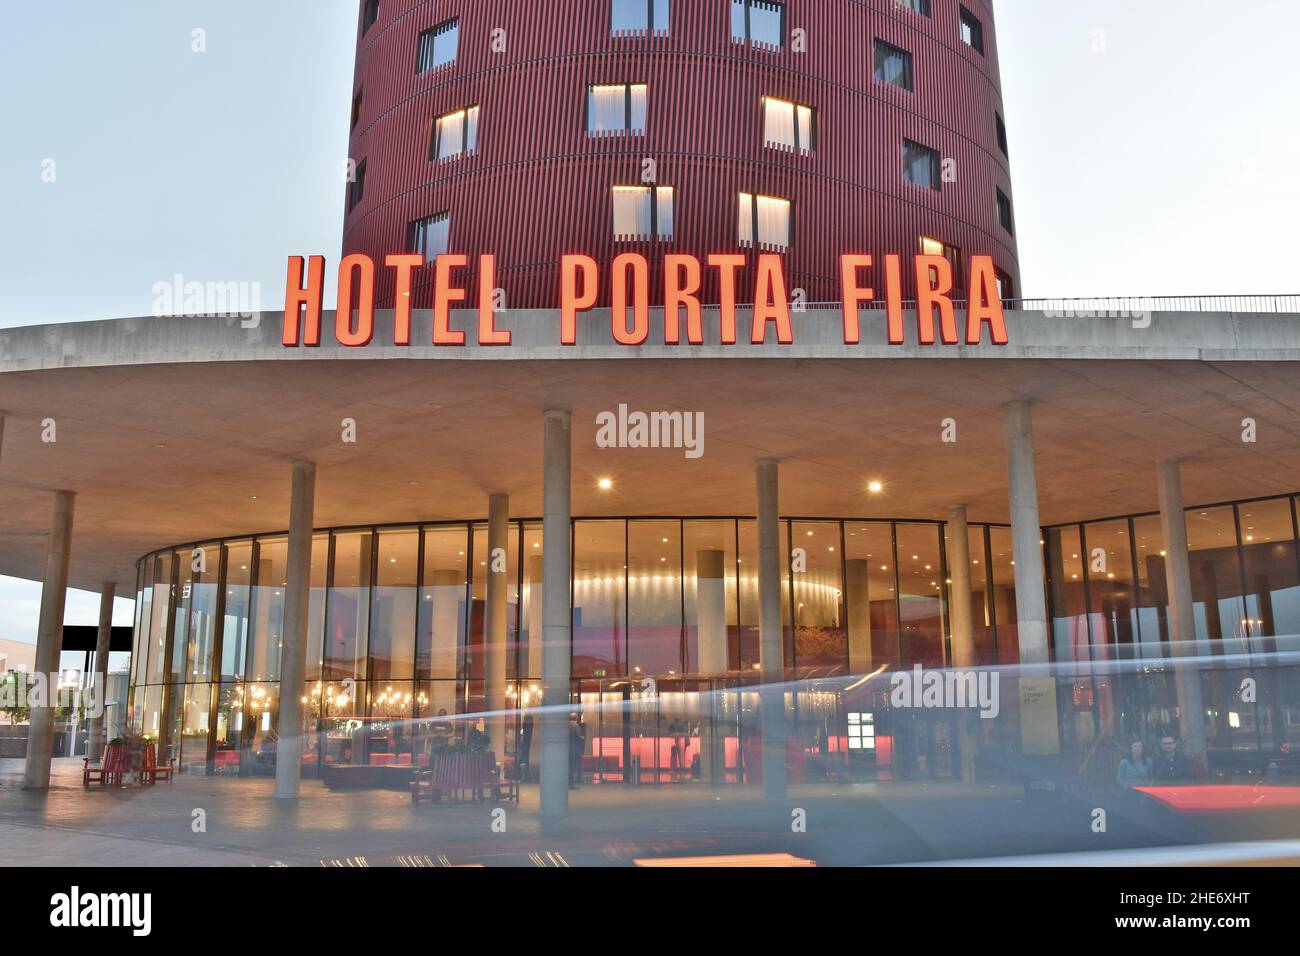 Modernes Hotel Porta Fira Gebäude in der Abenddämmerung, entworfen vom japanischen Architekten Toyo Ito in L'Hospitalet de Llobregat Barcelona Spanien. Stockfoto